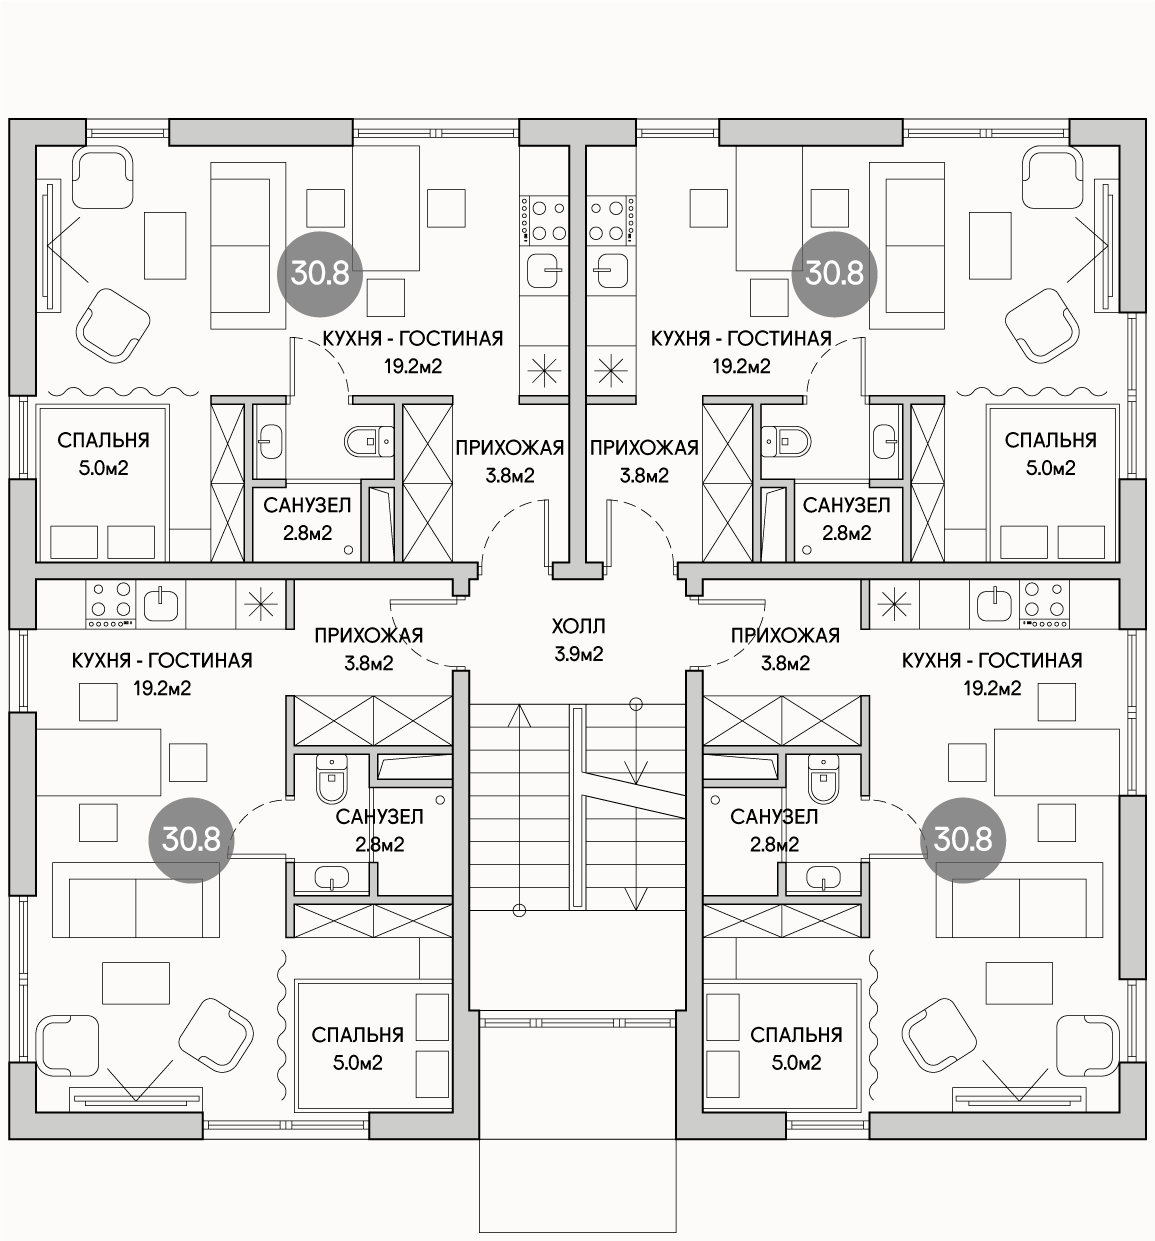 Планирока 2-го этажа в проекте Многоквартирный дом с эксплуатируемой кровлей MK-515